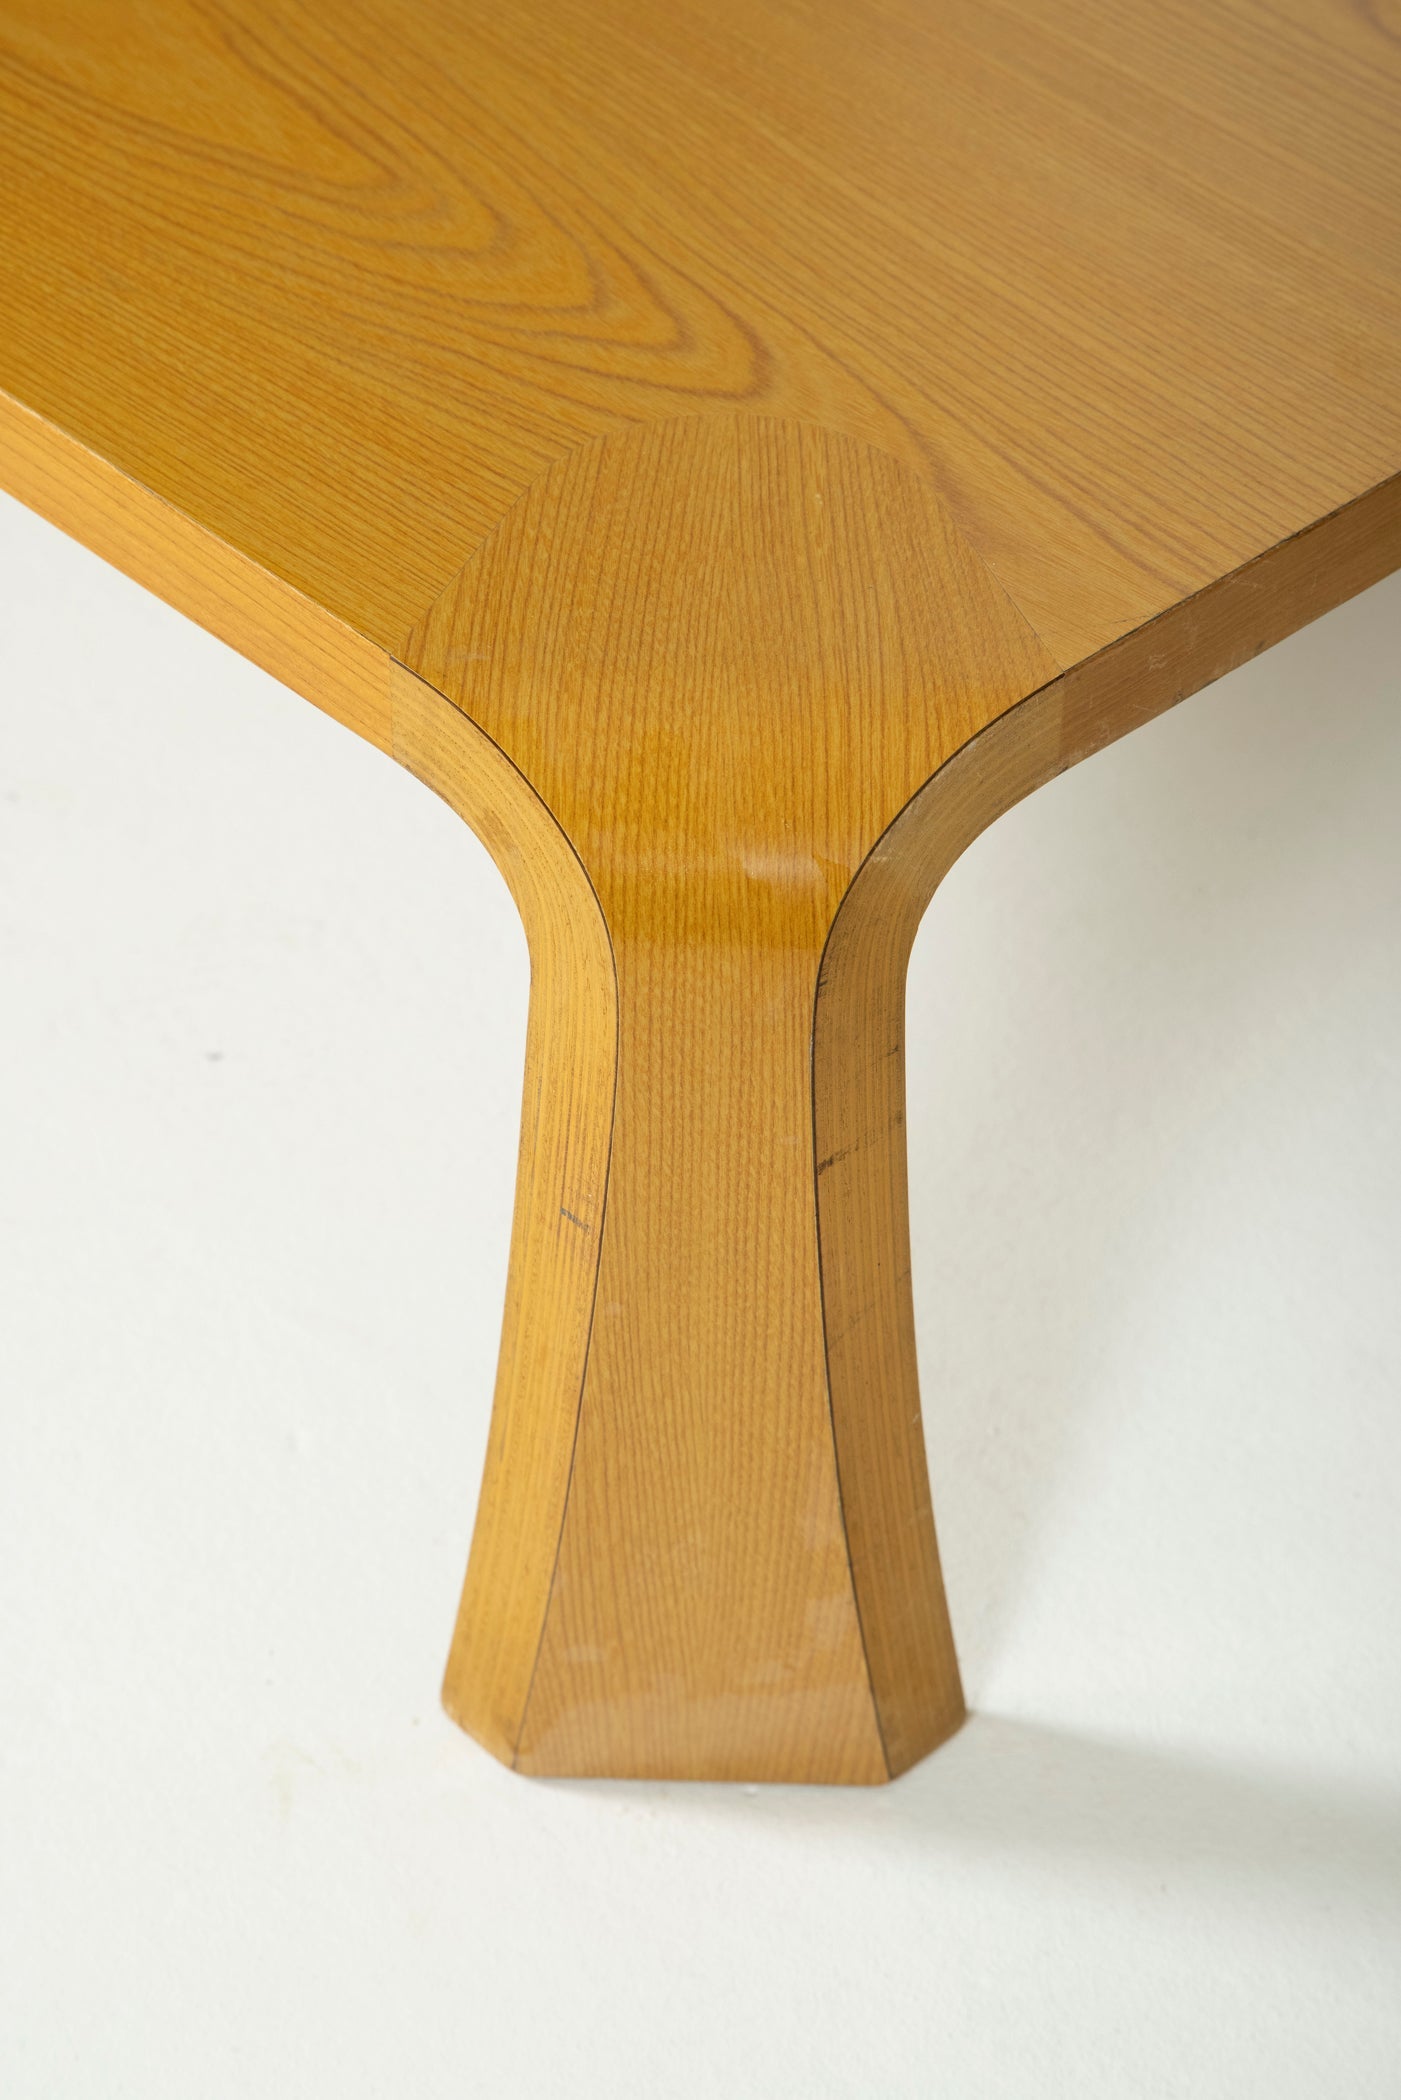 Table basse Saburo Inui pour Tendo Mokko au japon dans les années 1960. Plateau rectangulaire en bois mélaminé et pieds courbés. Bon état vintage.